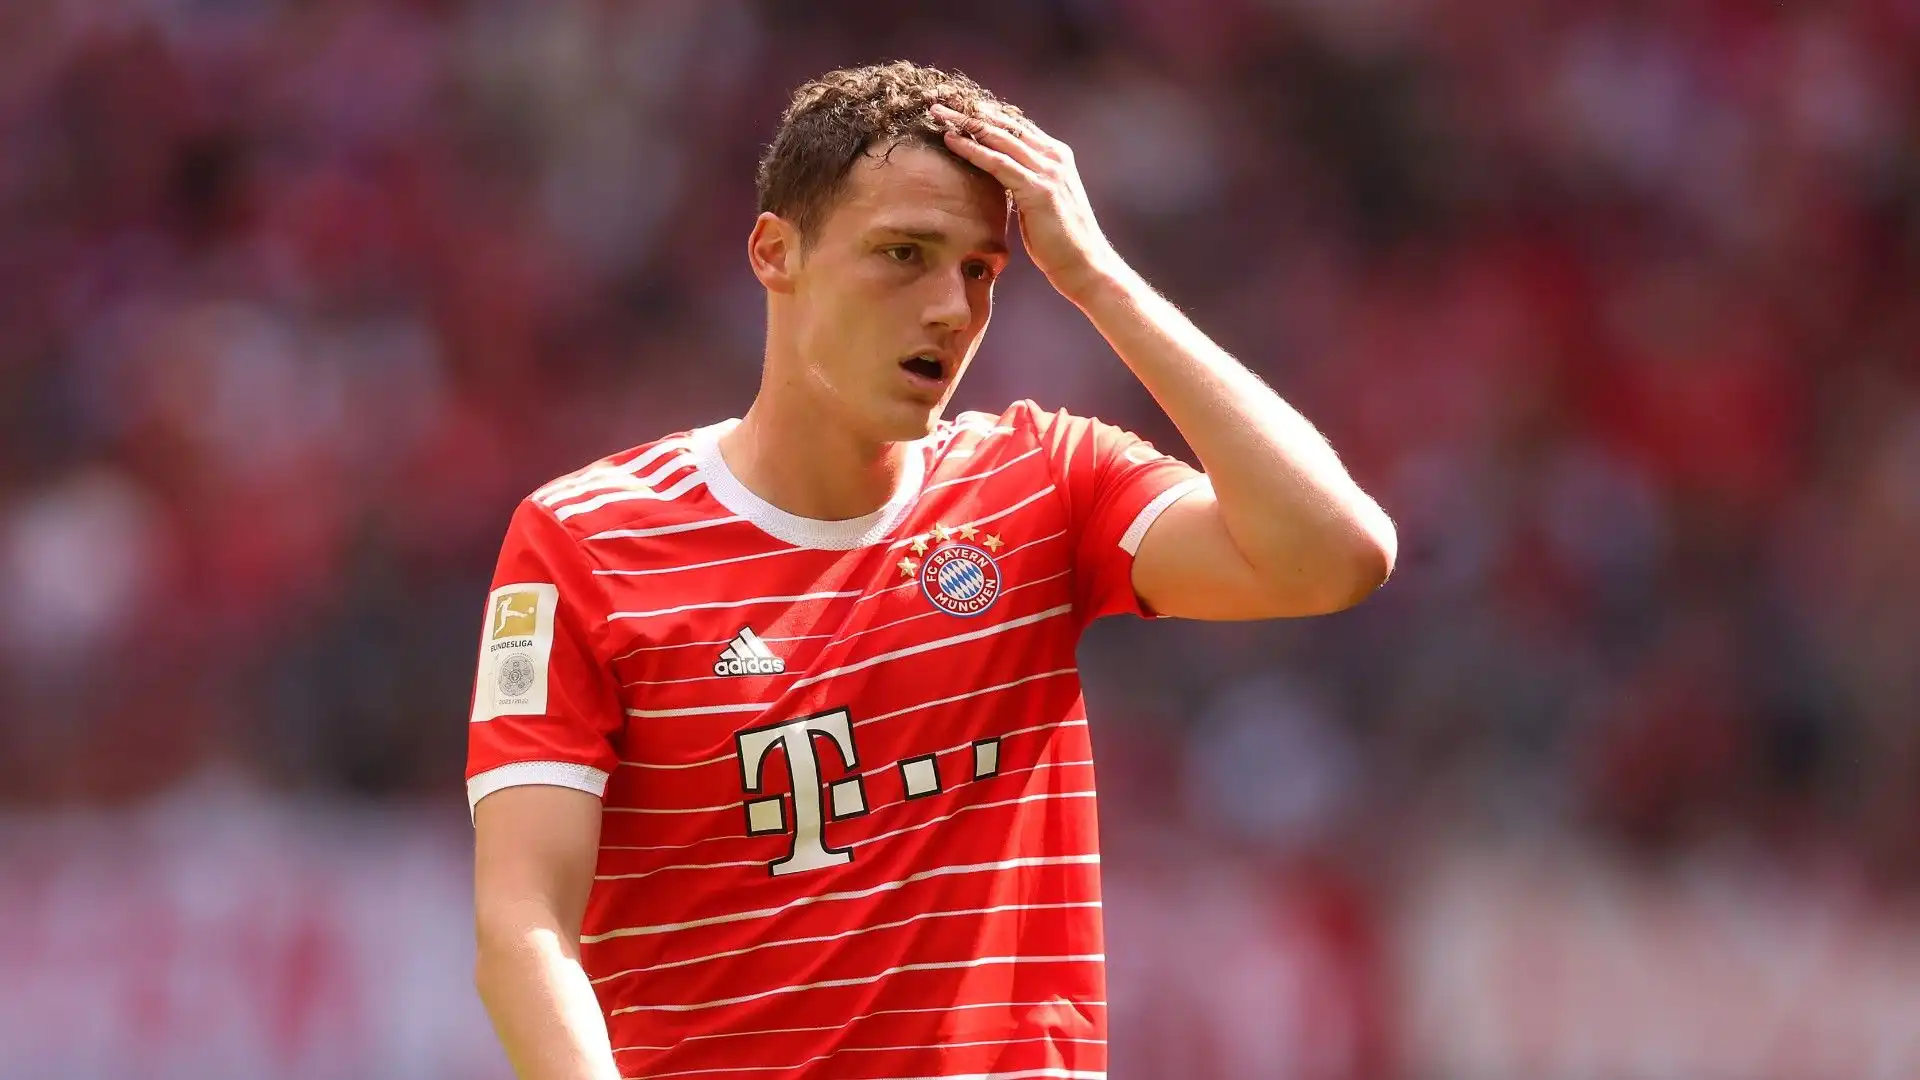 Il club tedesco è costretto a vendere il calciatore questa estate per non perderlo gratis l'anno prossimo